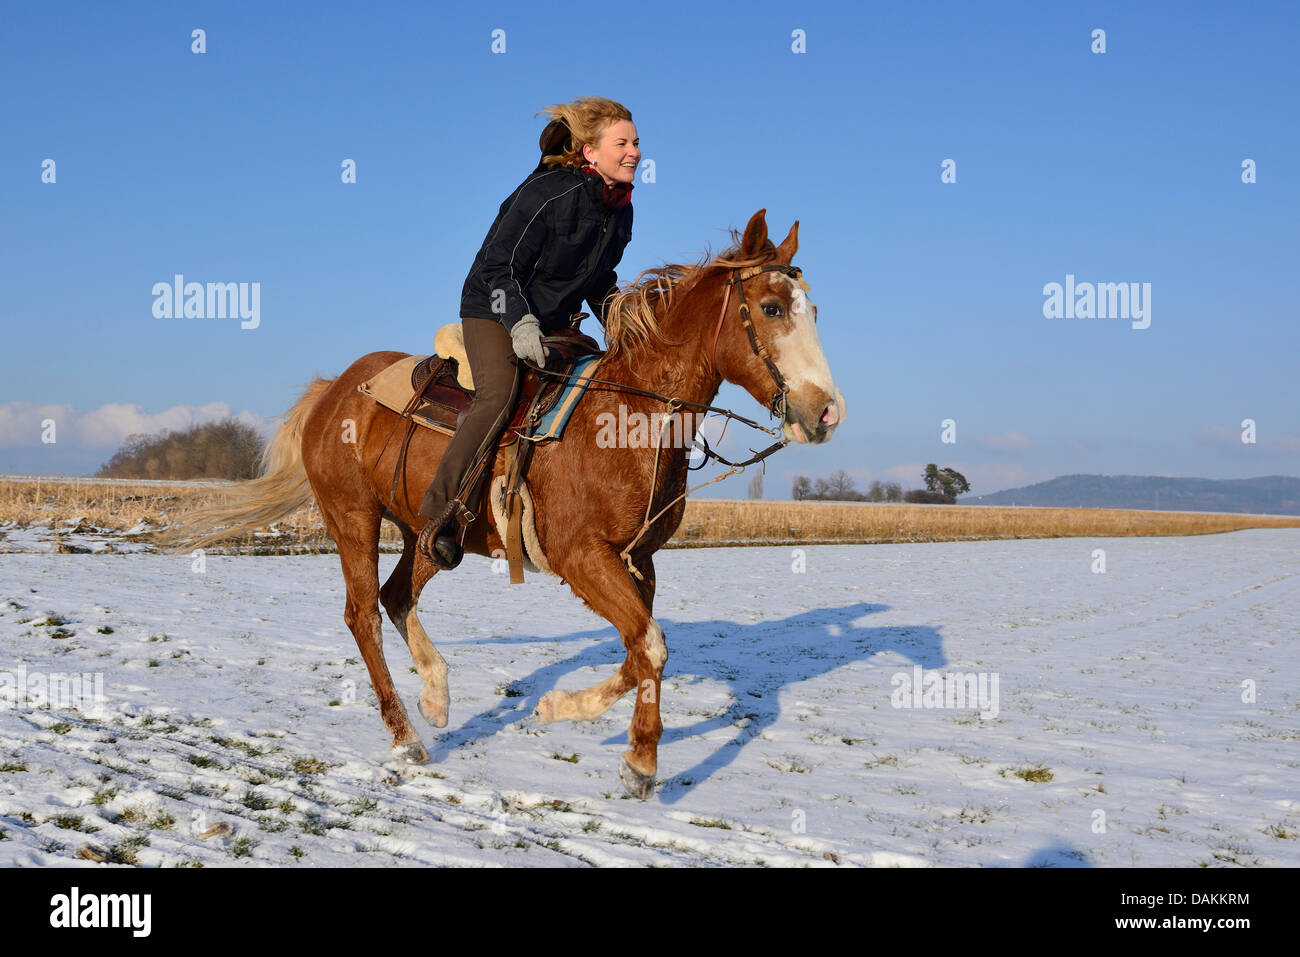 Peindre le Cheval (Equus caballus przewalskii f.), femme équitation dans une prairie couverte de neige, Allemagne Banque D'Images